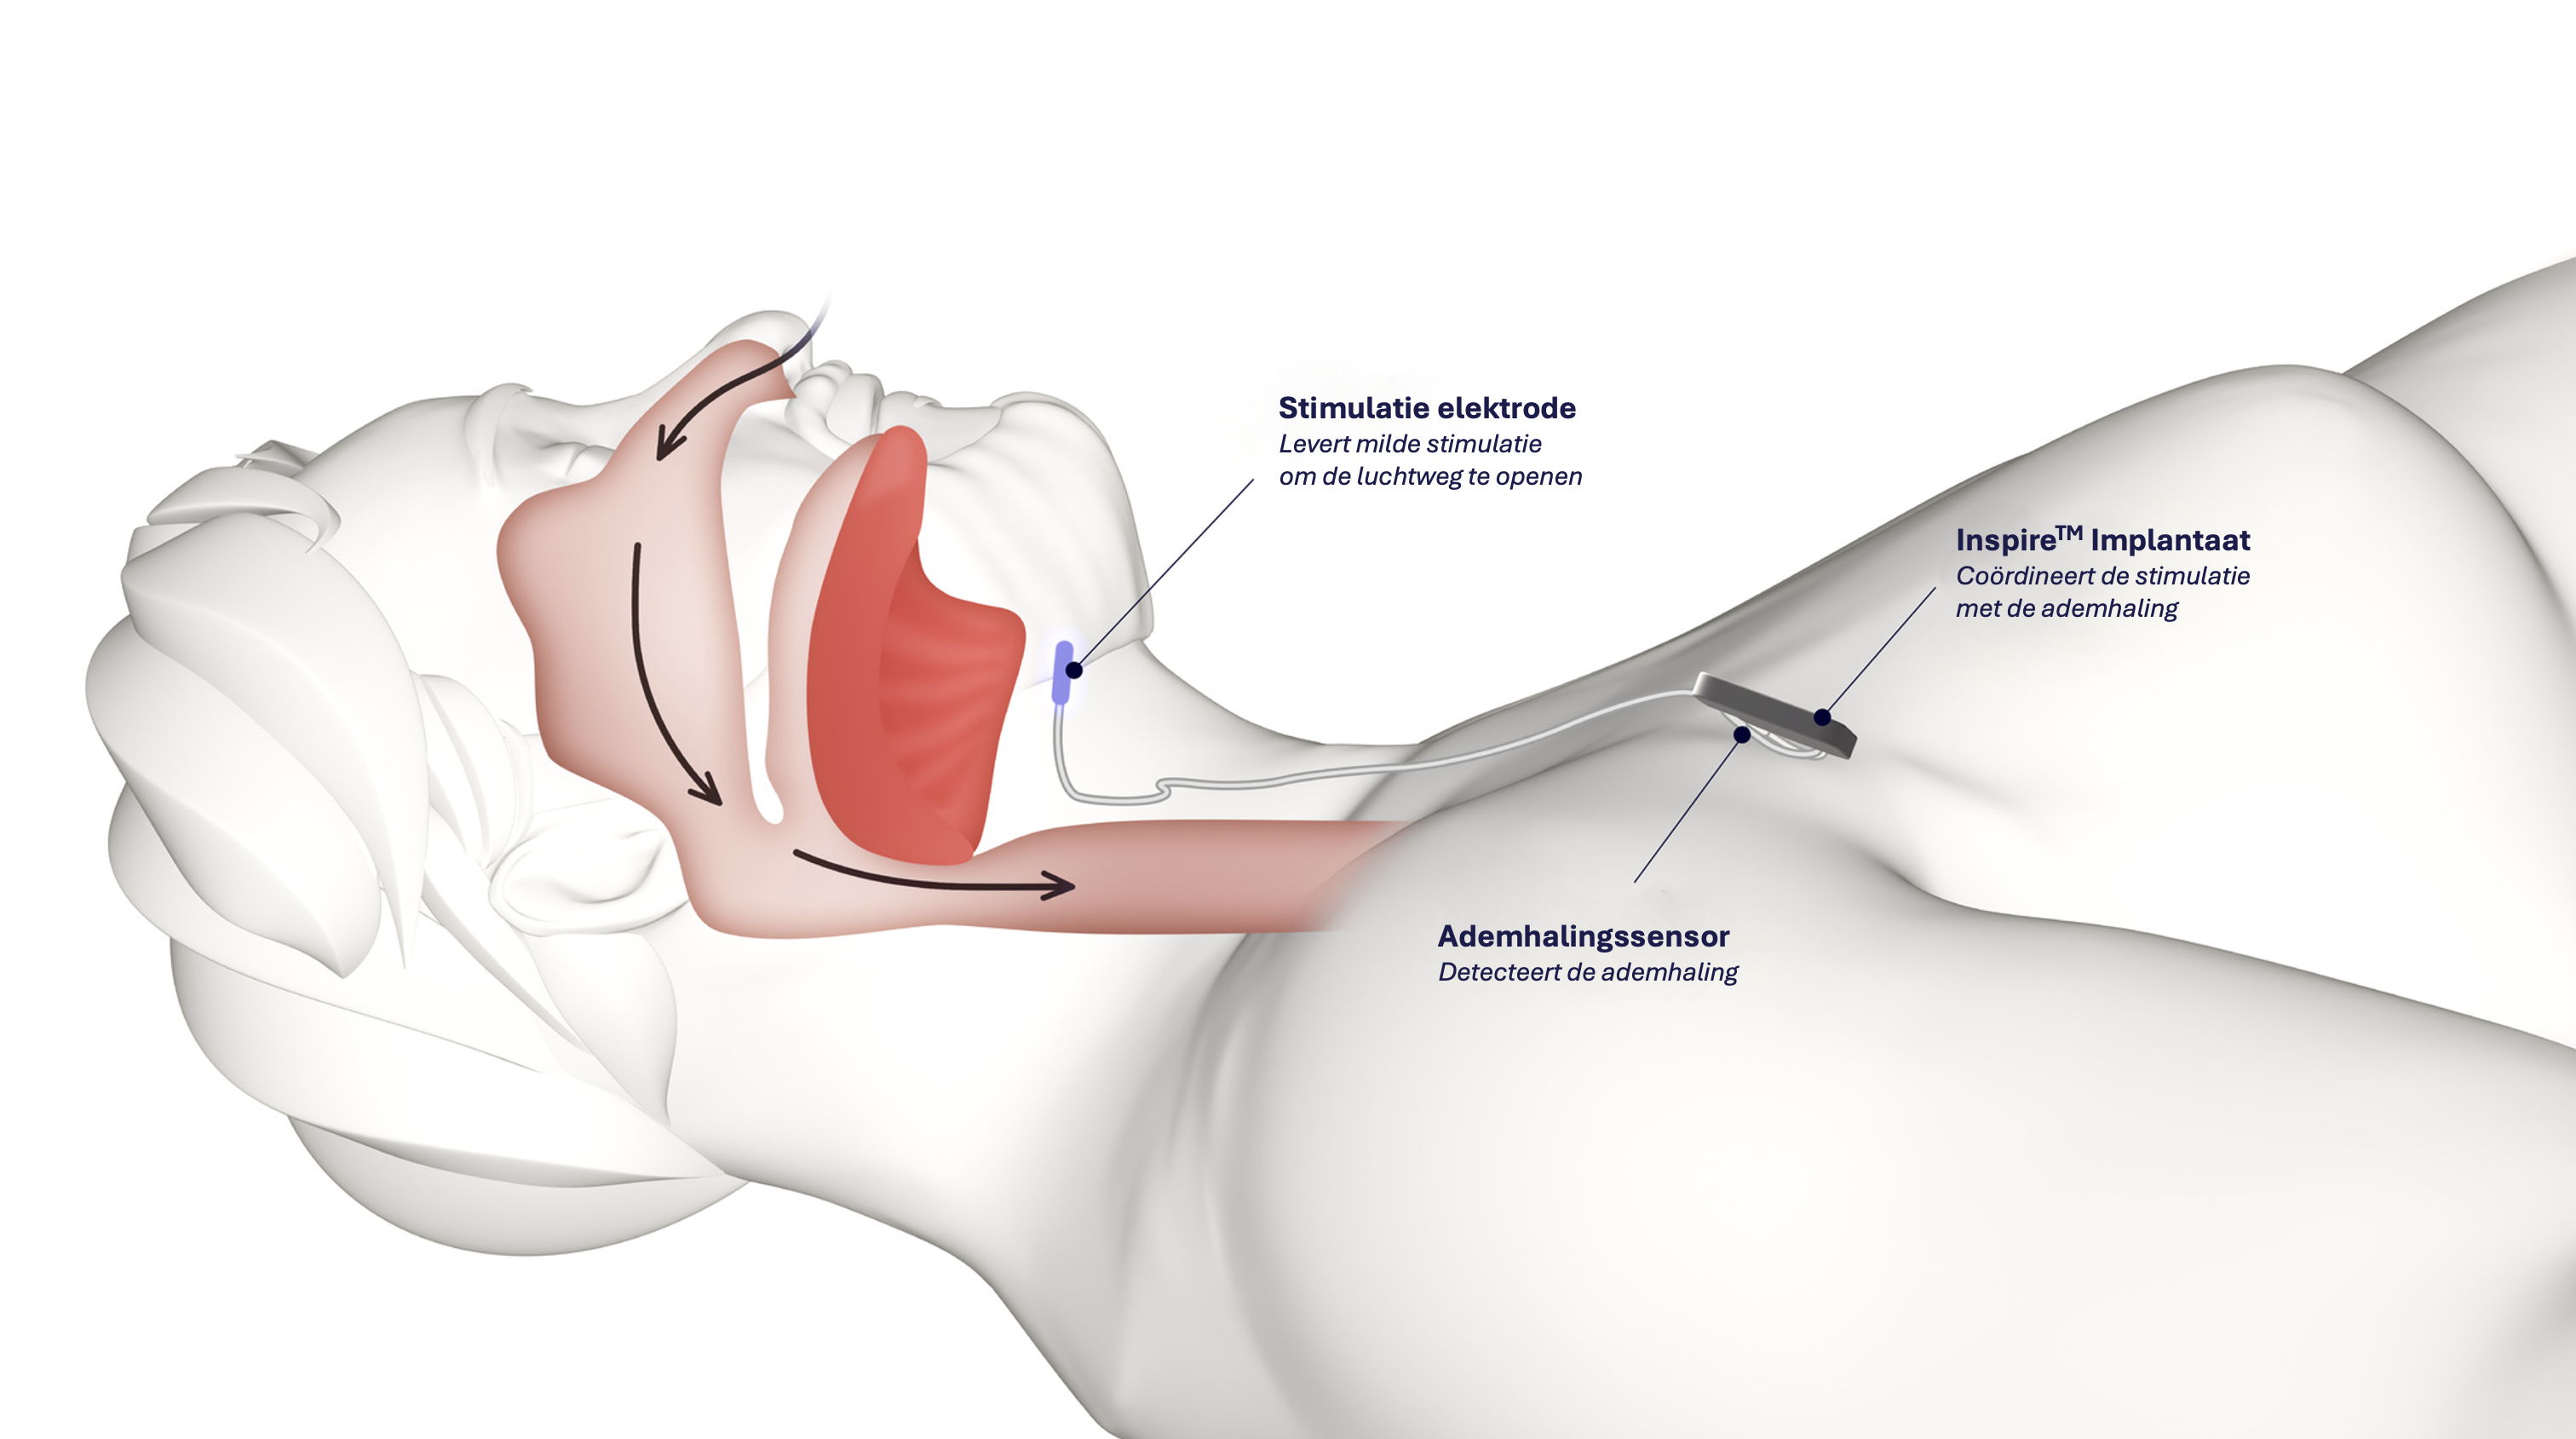 Een cuff om de tongzenuw (blauw) wordt onder de huid verbonden aan een stimulator tussen sleutelbeen en borststreek. Vanuit de stimulator loopt een draadje naar de long toe. Hieraan zit een sensor. Die sensor geeft een signaal bij inademen naar de stimulator, die vervolgens de tongzenuw stimuleert om de ruimte achteraan de keel te vergroten en de slaapapneu te bestrijden.